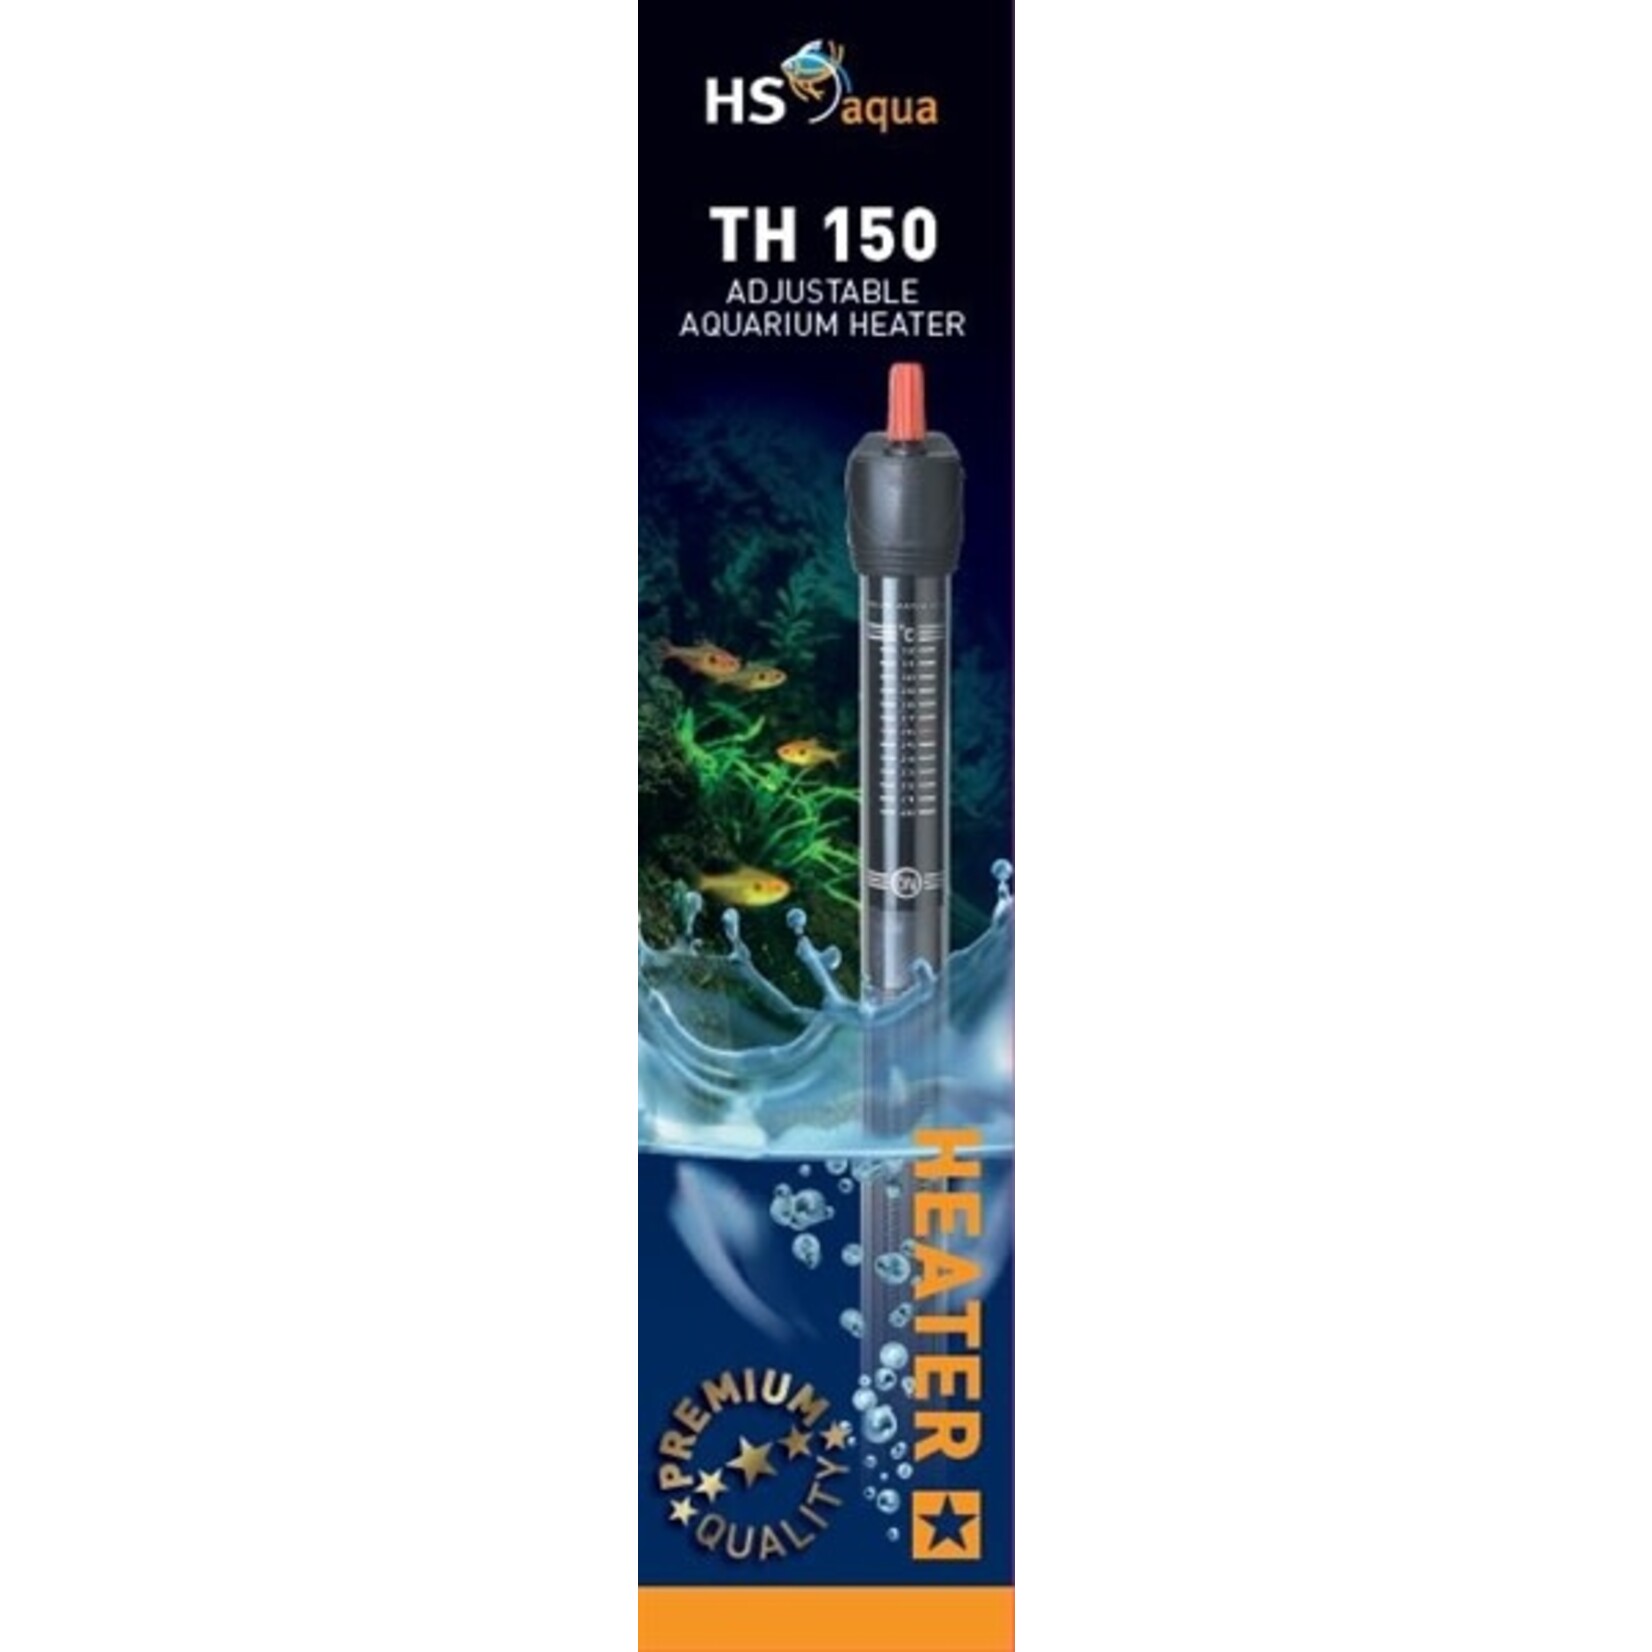 HS Aqua Glass aquarium heater & protector th-150